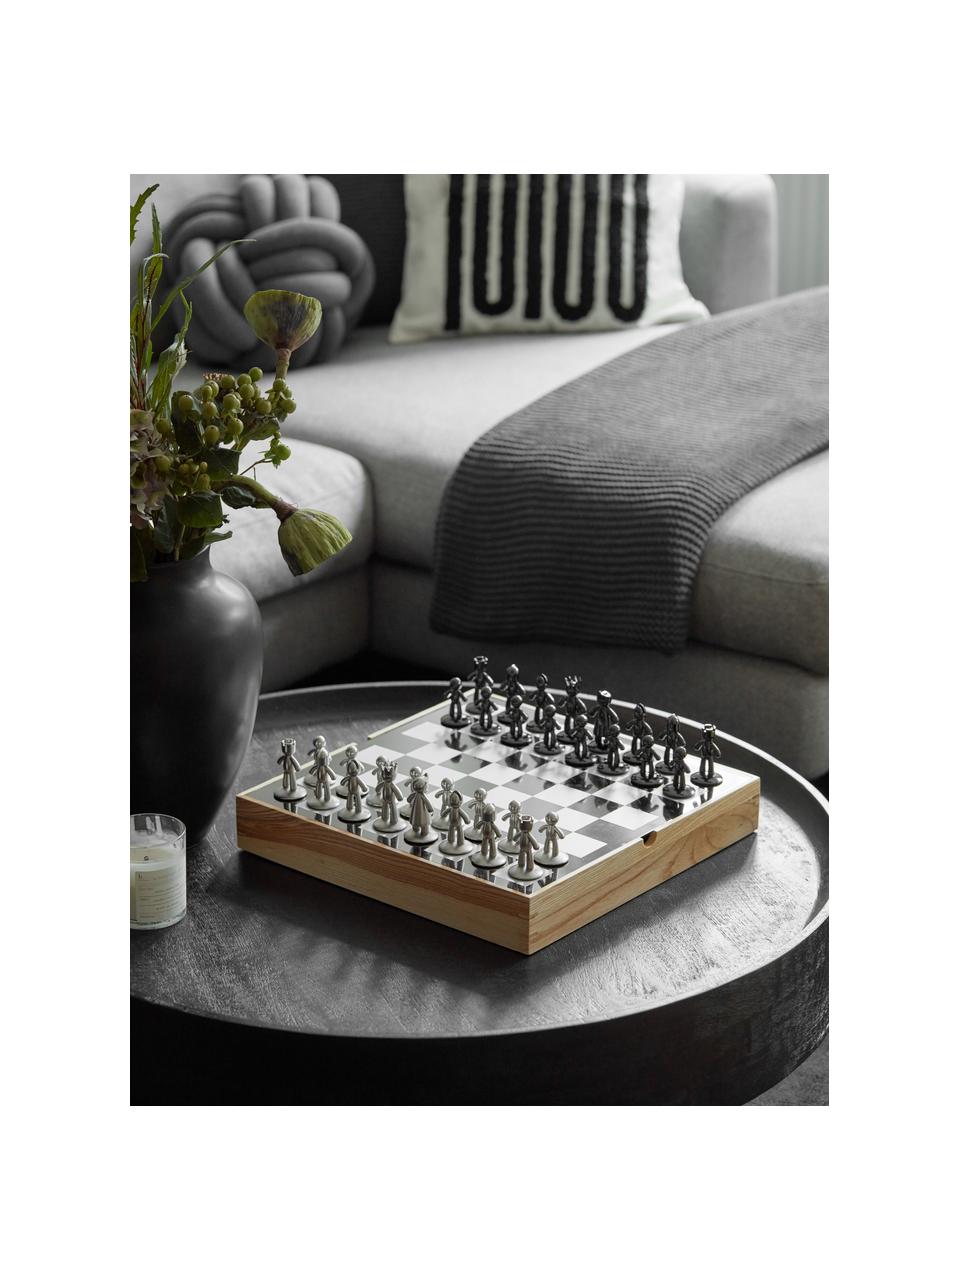 Hra šachy Buddy, 33 dílů, Černá, stříbrná, světlé dřevo, Š 33 cm, V 4 cm